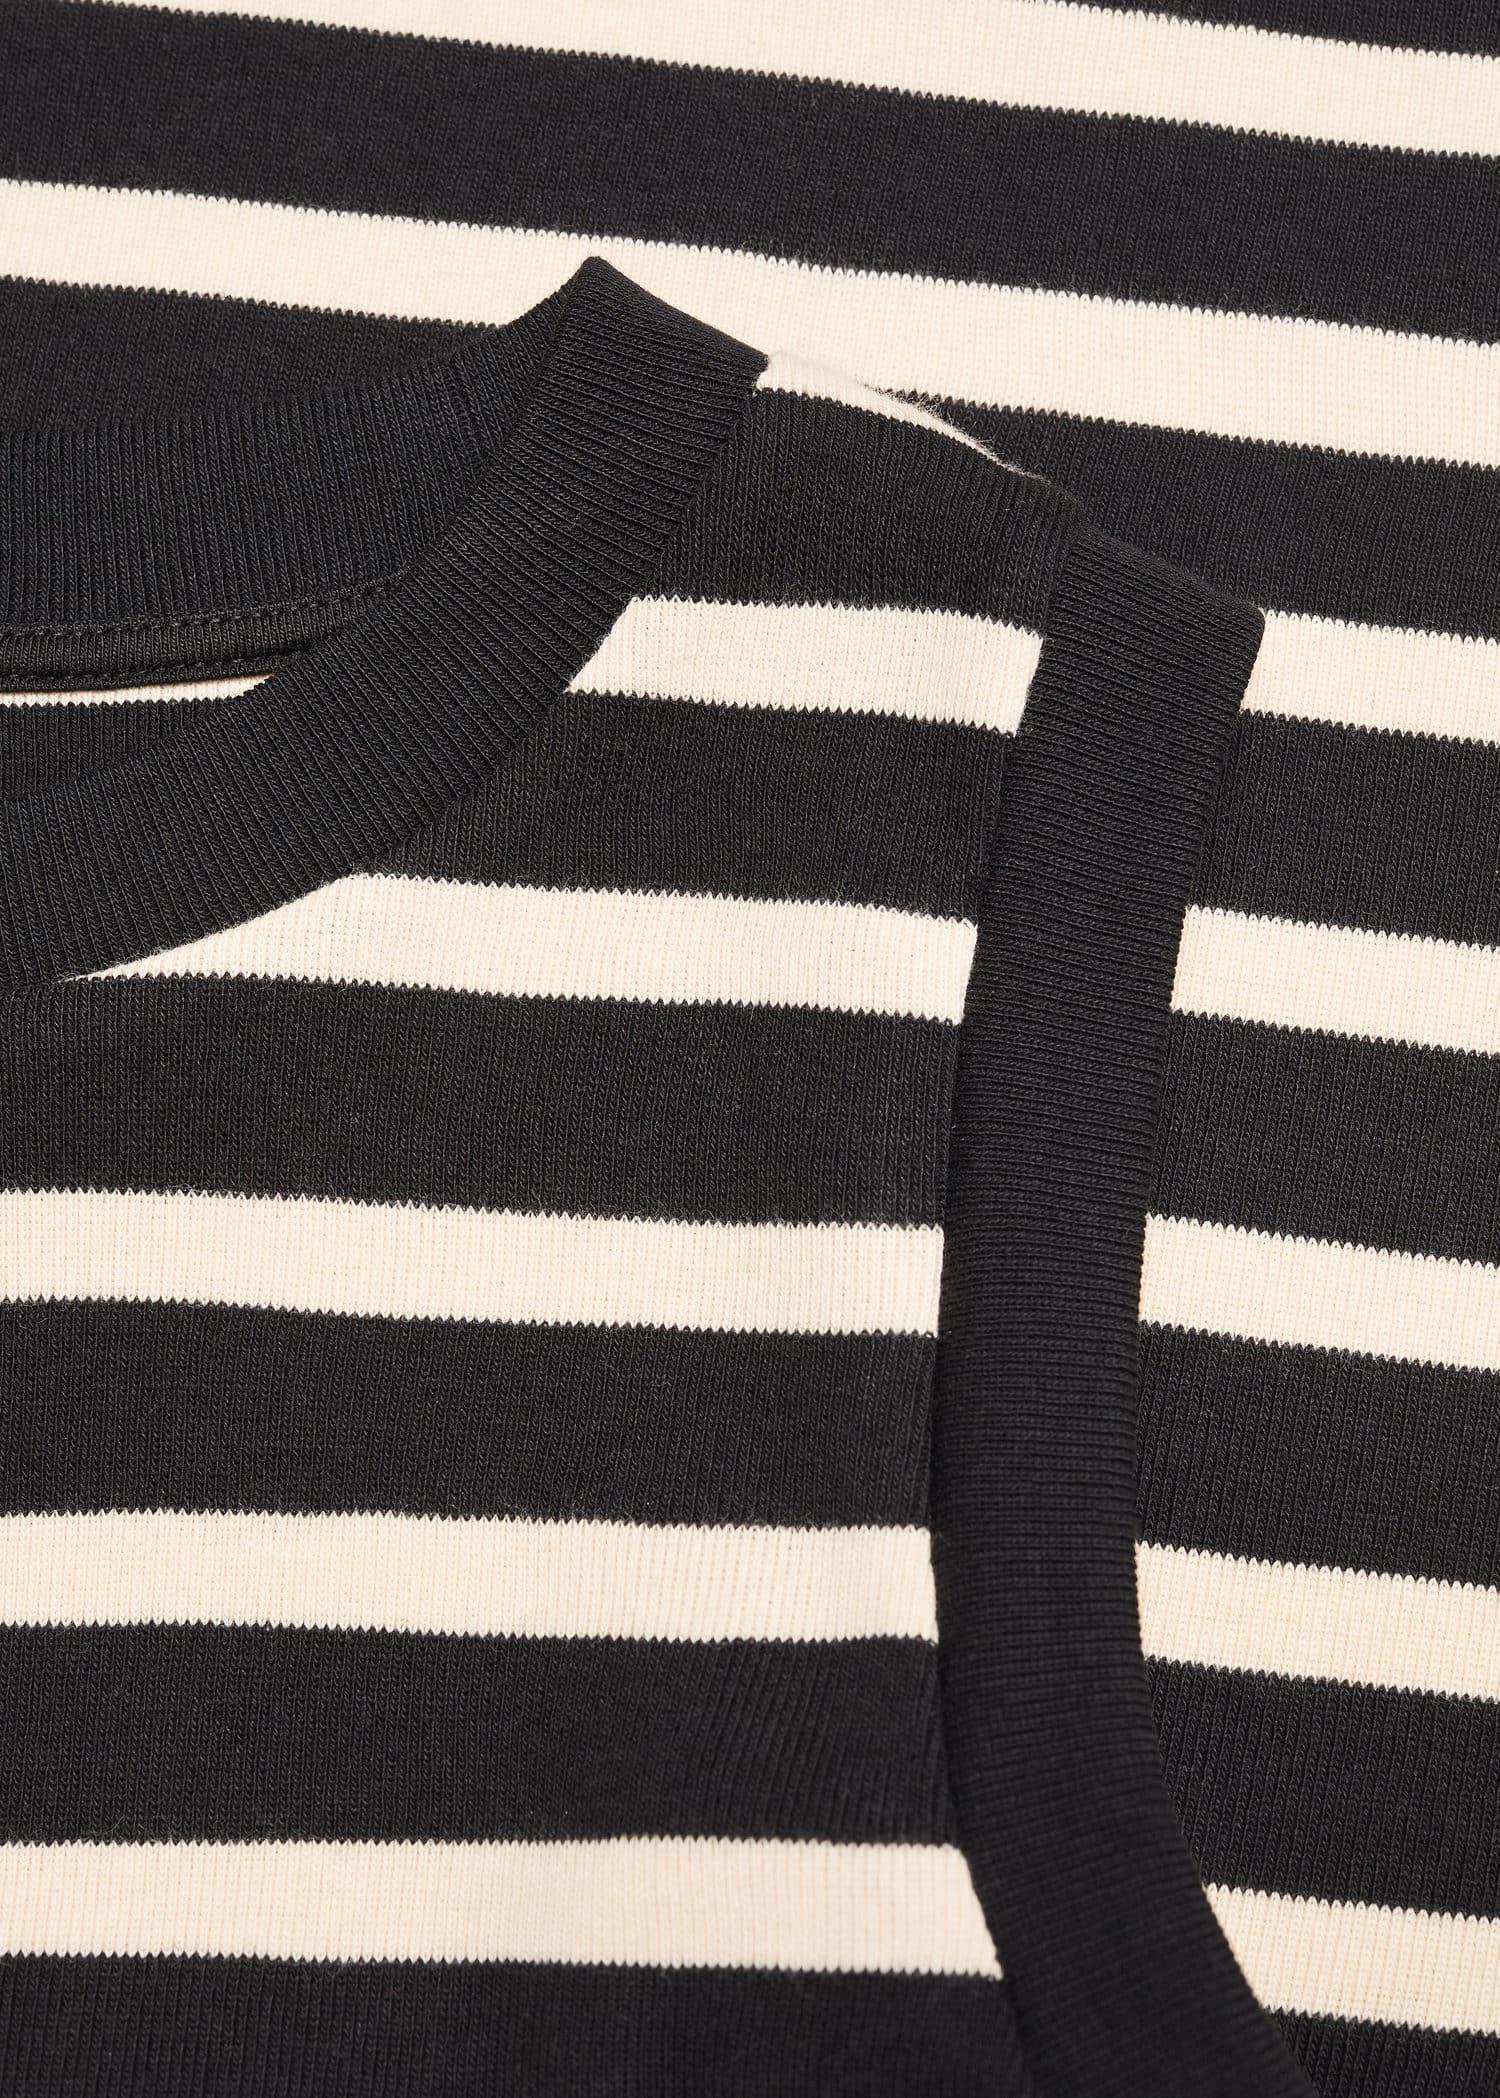 Mango - Black Striped Cotton-Blend Top